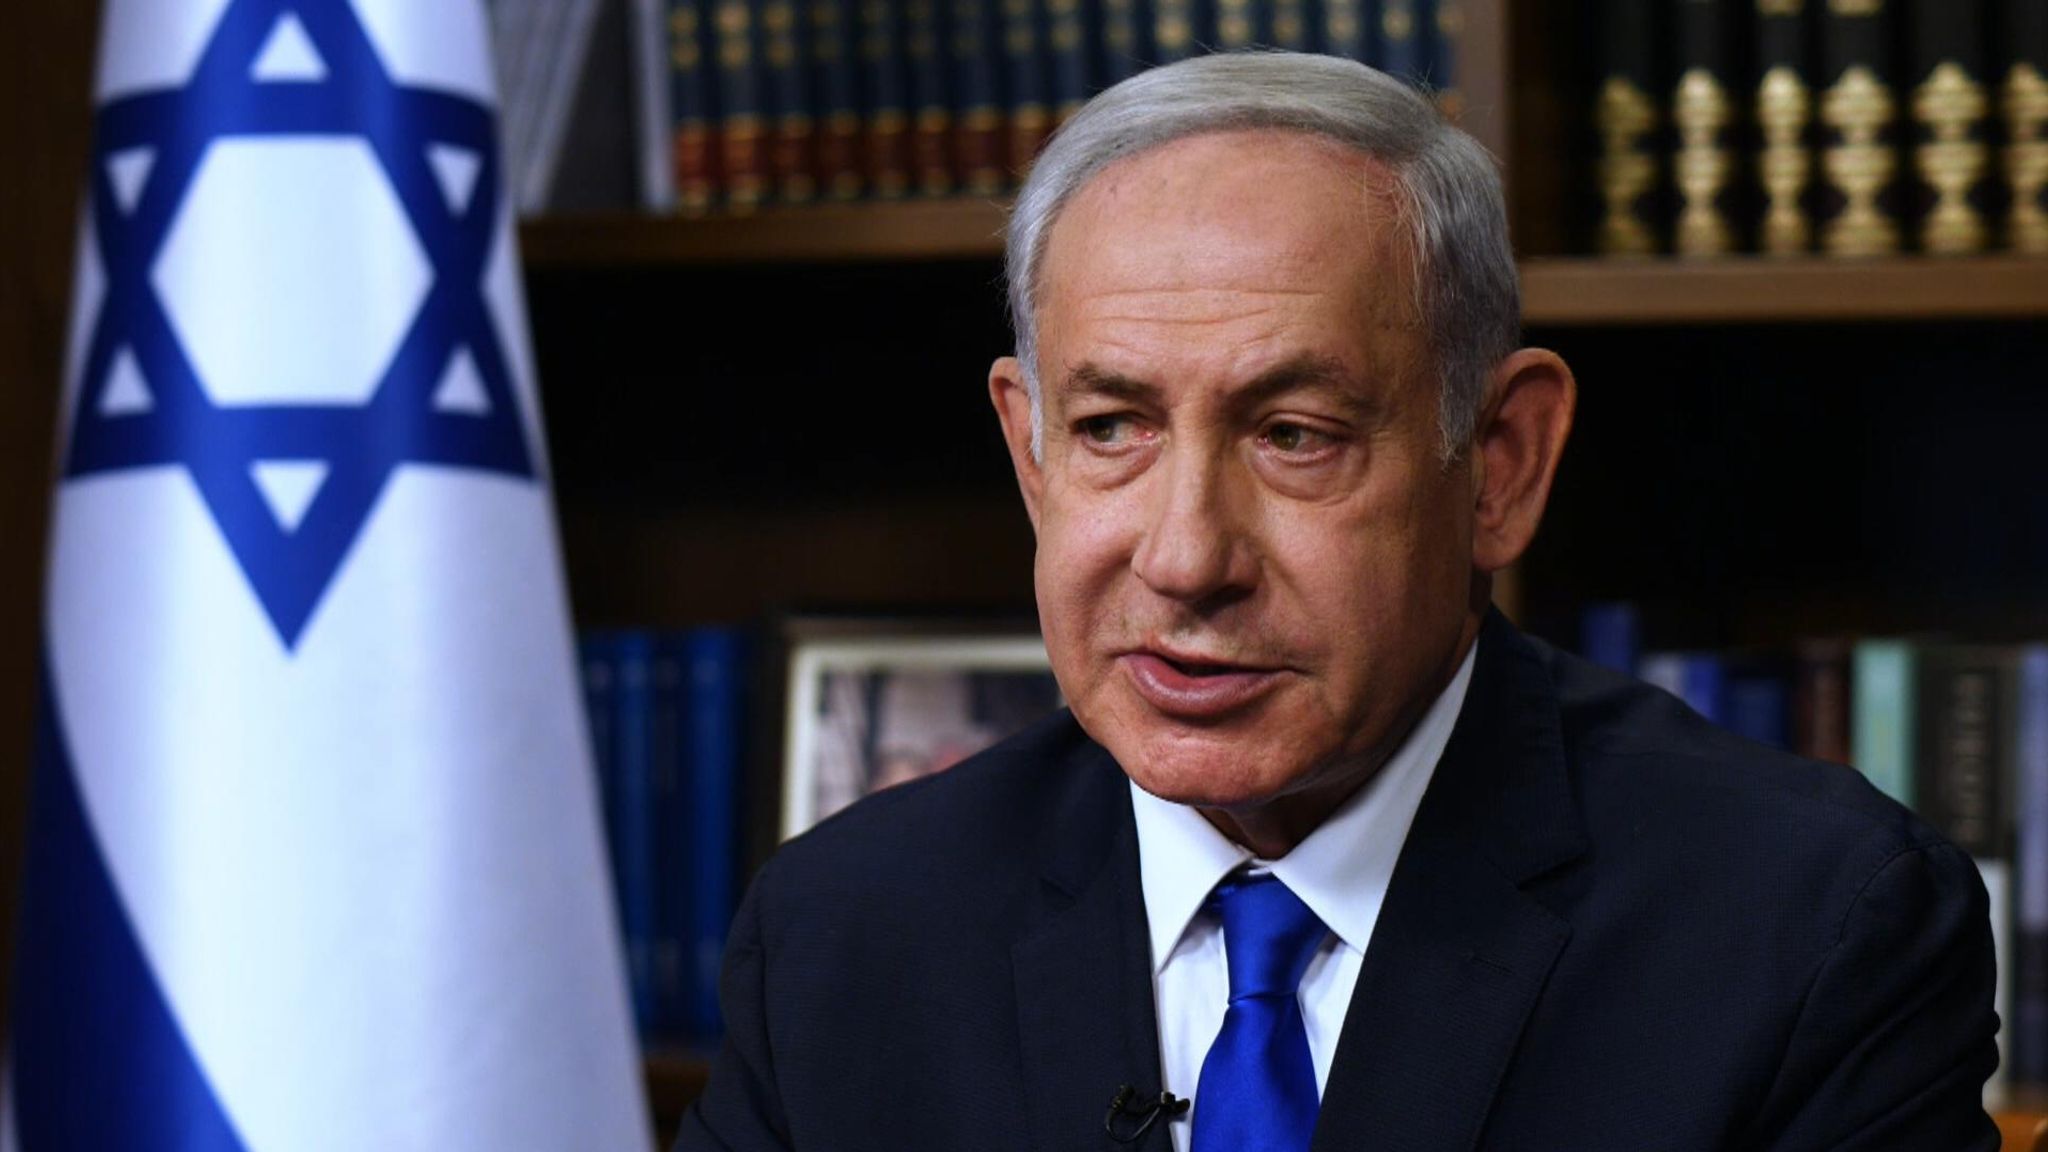 Netanyahu chiude alla pace: "L'Anp non guiderà Gaza finché io sarò premier"